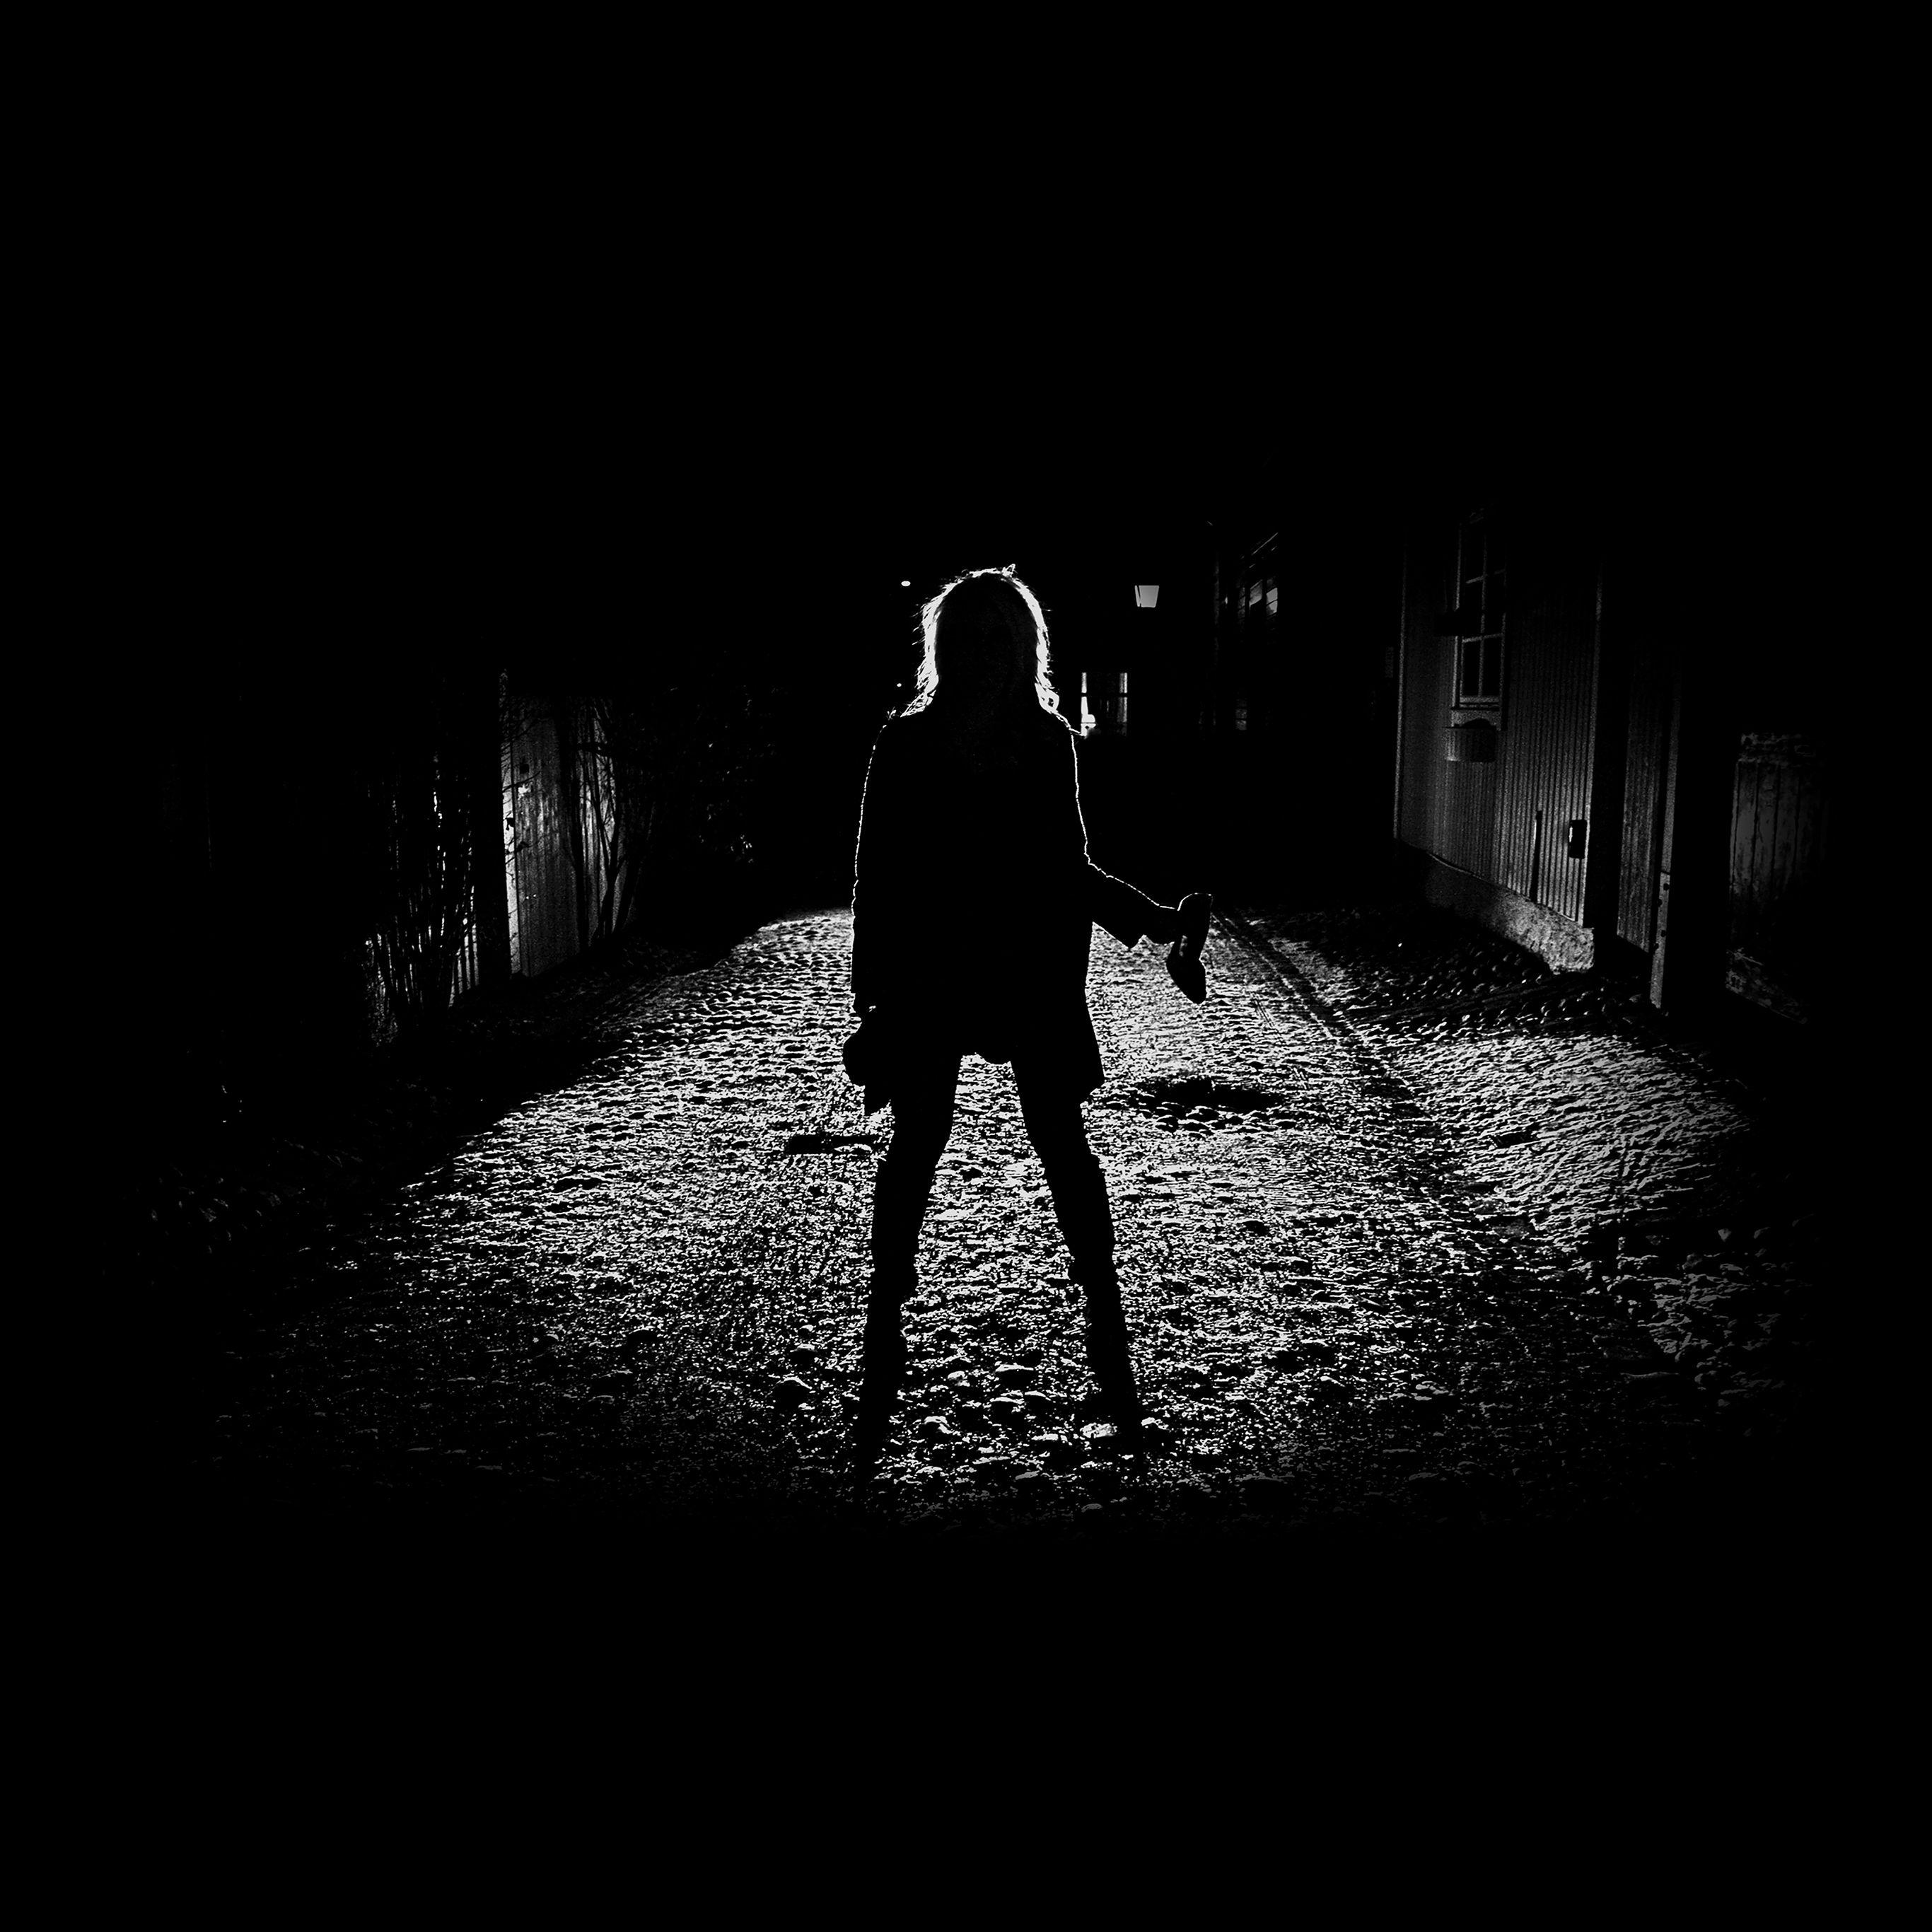 Girl in the Dark by Anna Lyndsey